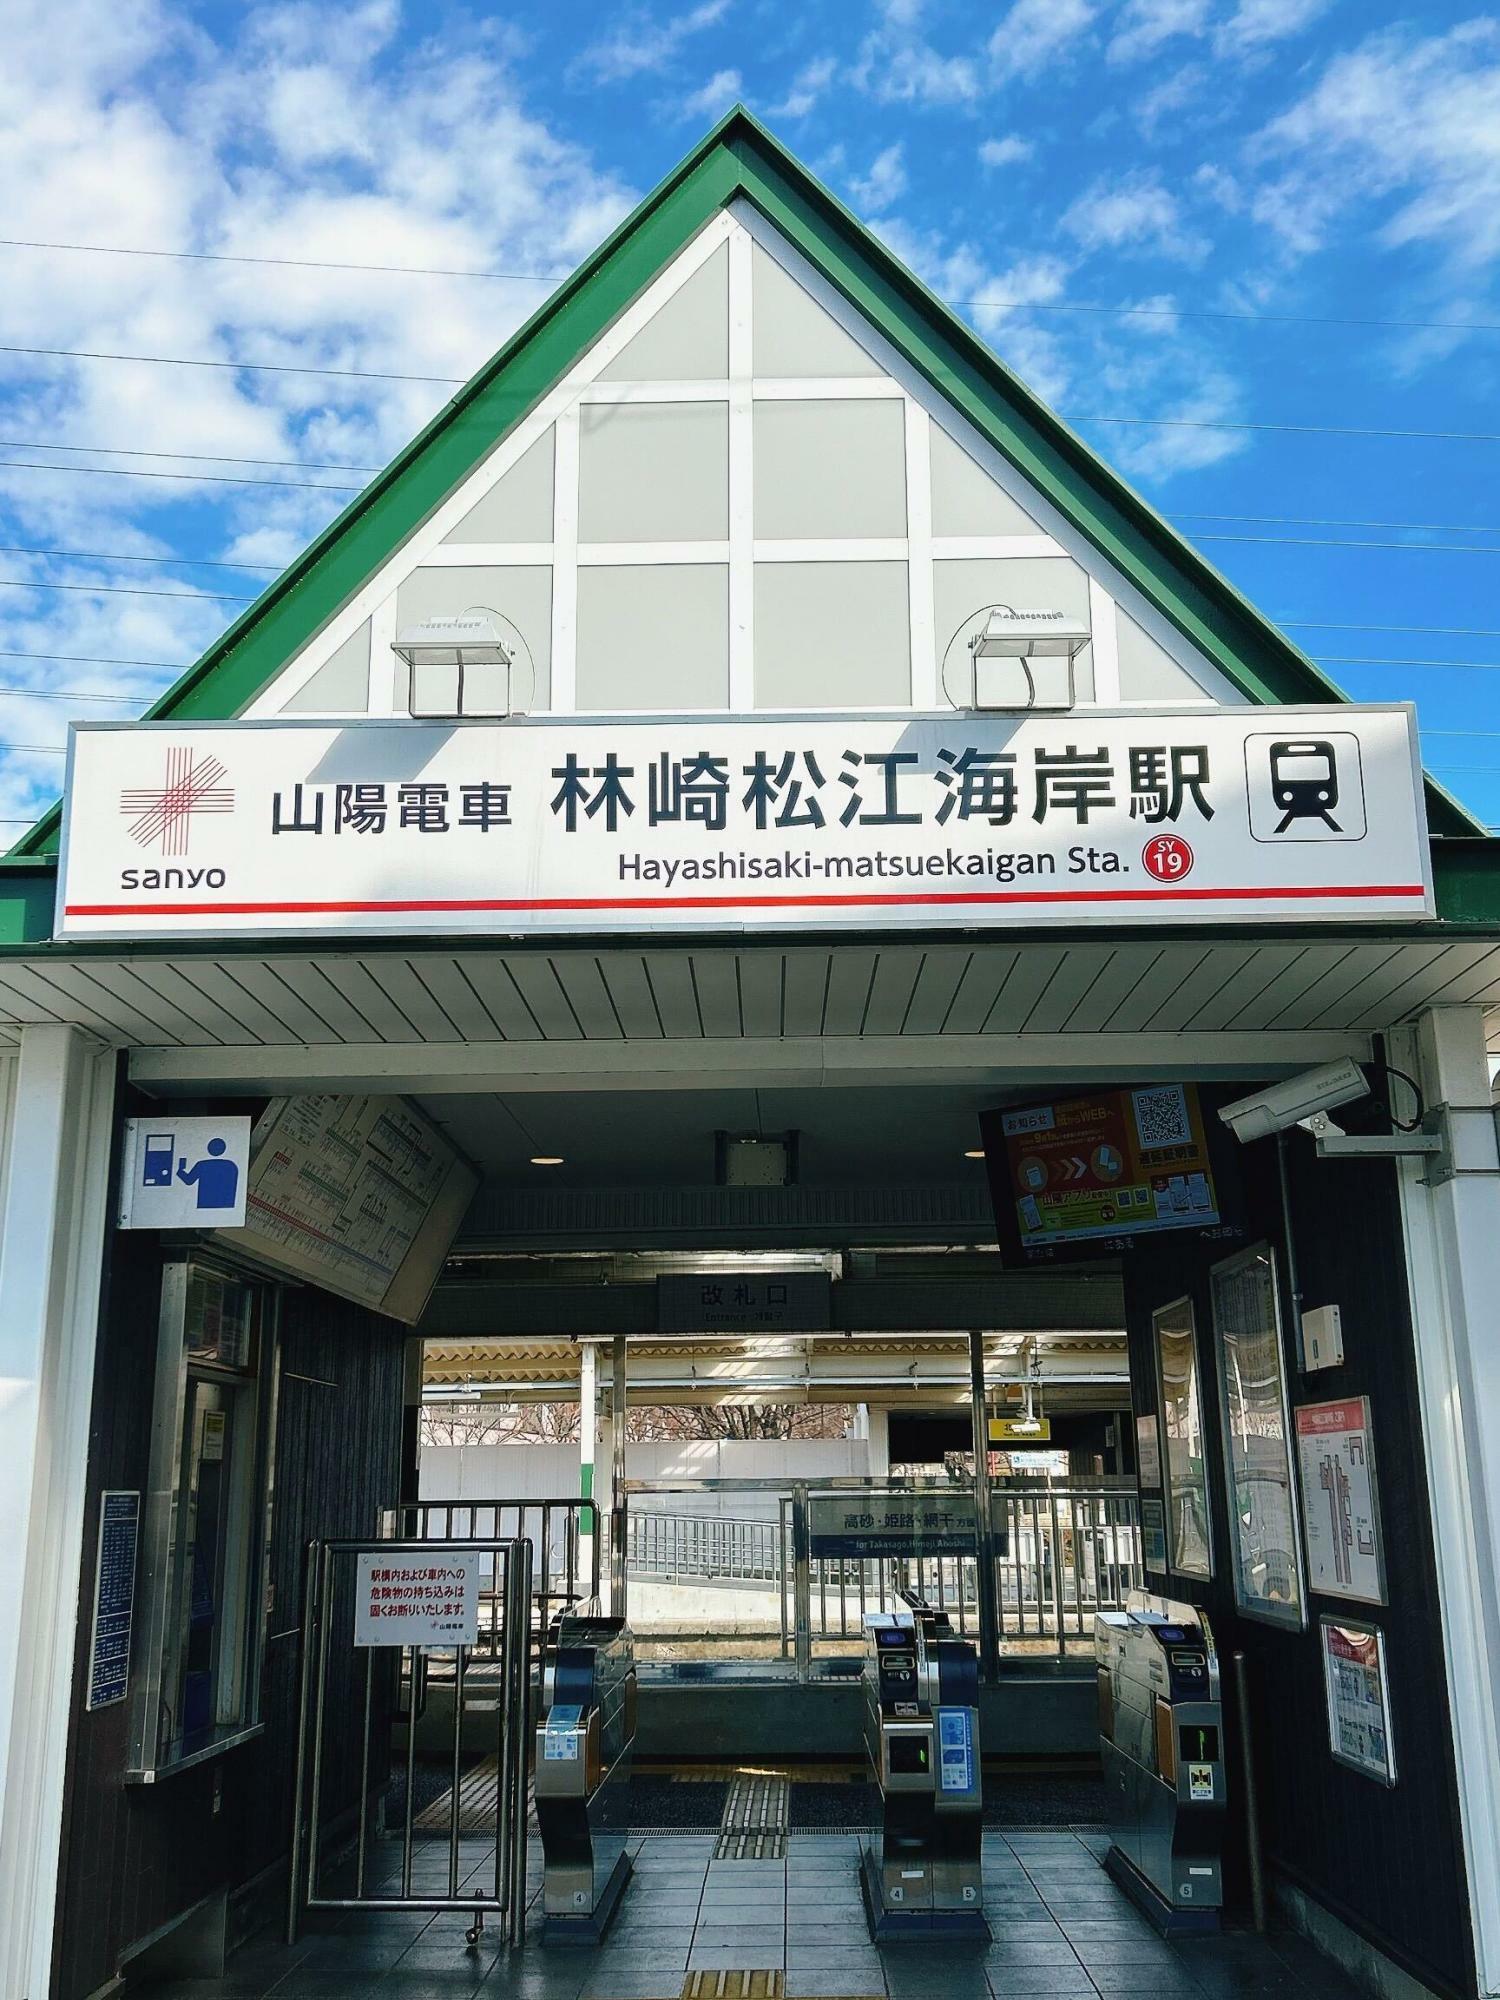 山陽電車の「林崎松江海岸駅」